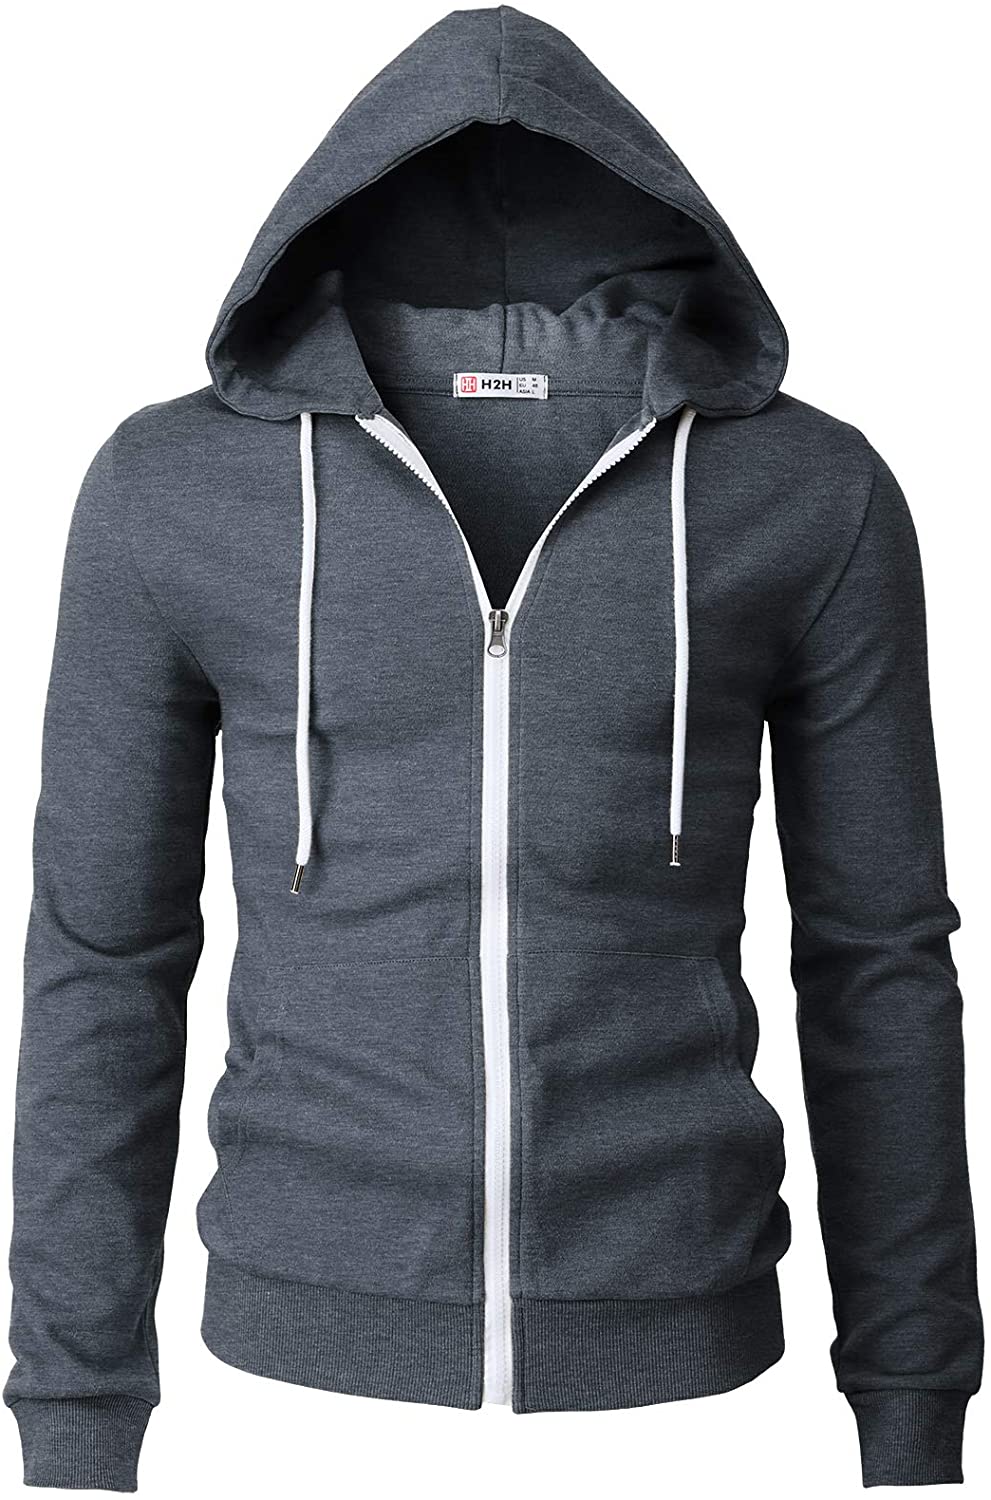 Pullover Hoodies Sweatshirt for Men,Vickyleb Mens Slim Fit Long Sleeve Lightweight Hoodie with Kanga Pocket 